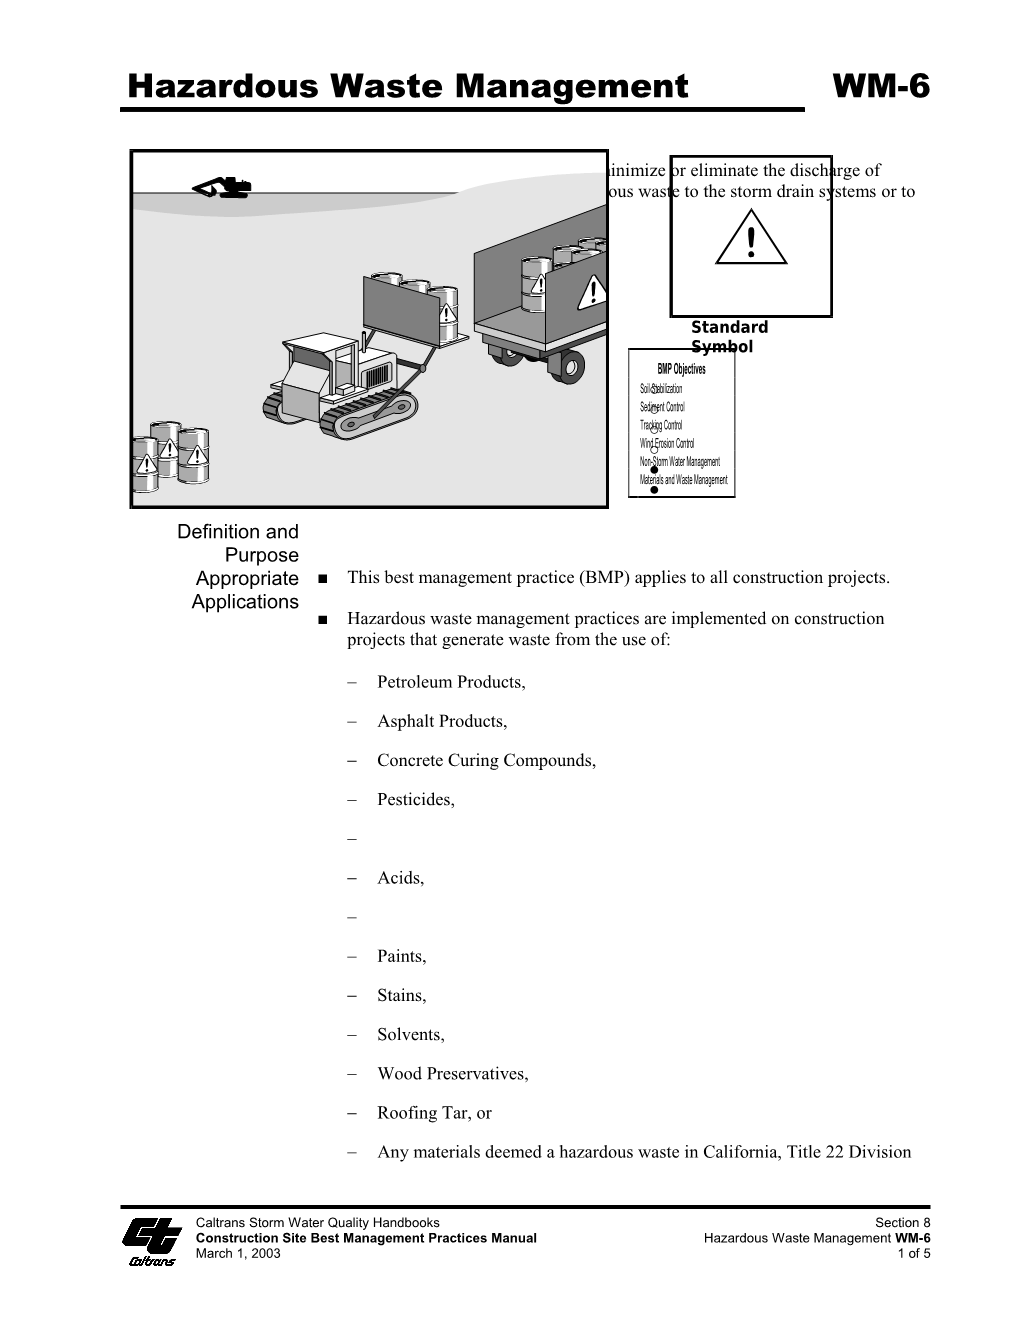 Construction Site Best Management Practices Manual Hazardous Waste Management WM-6